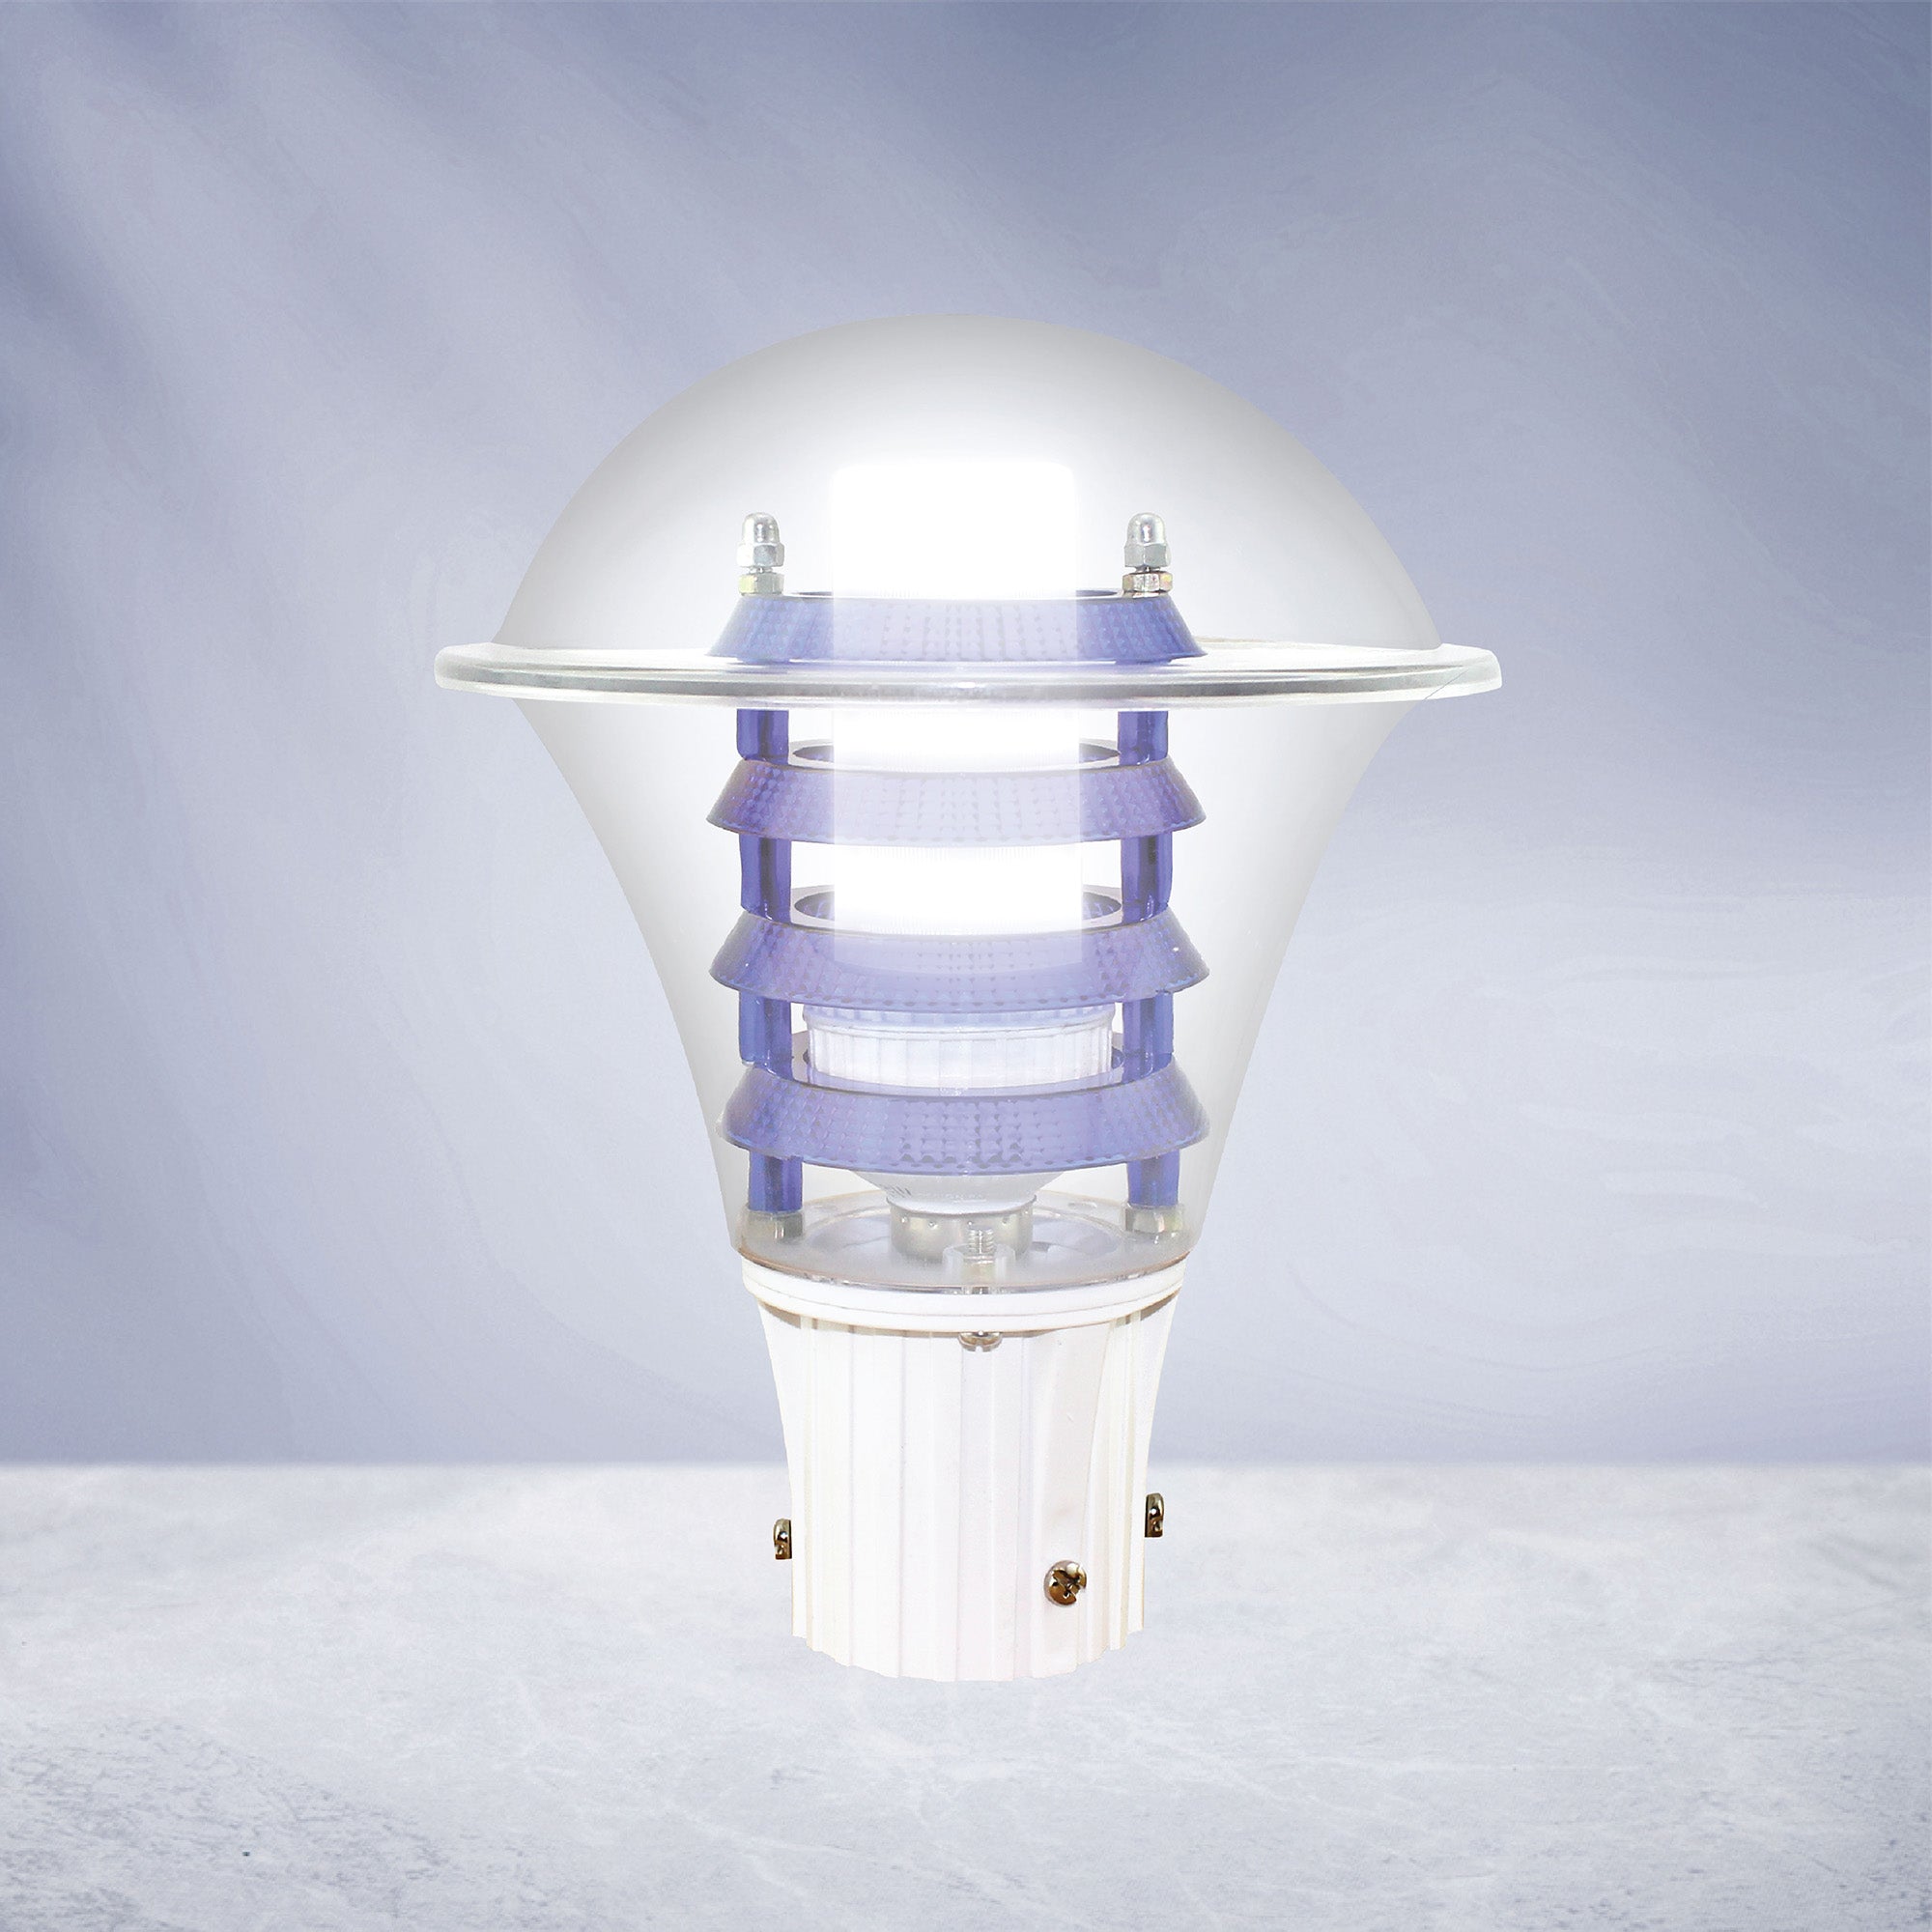 Viva PC Cool White LED Gate Light | Best LED Gate Light Model Online at affordable price Online #bulb options_cool